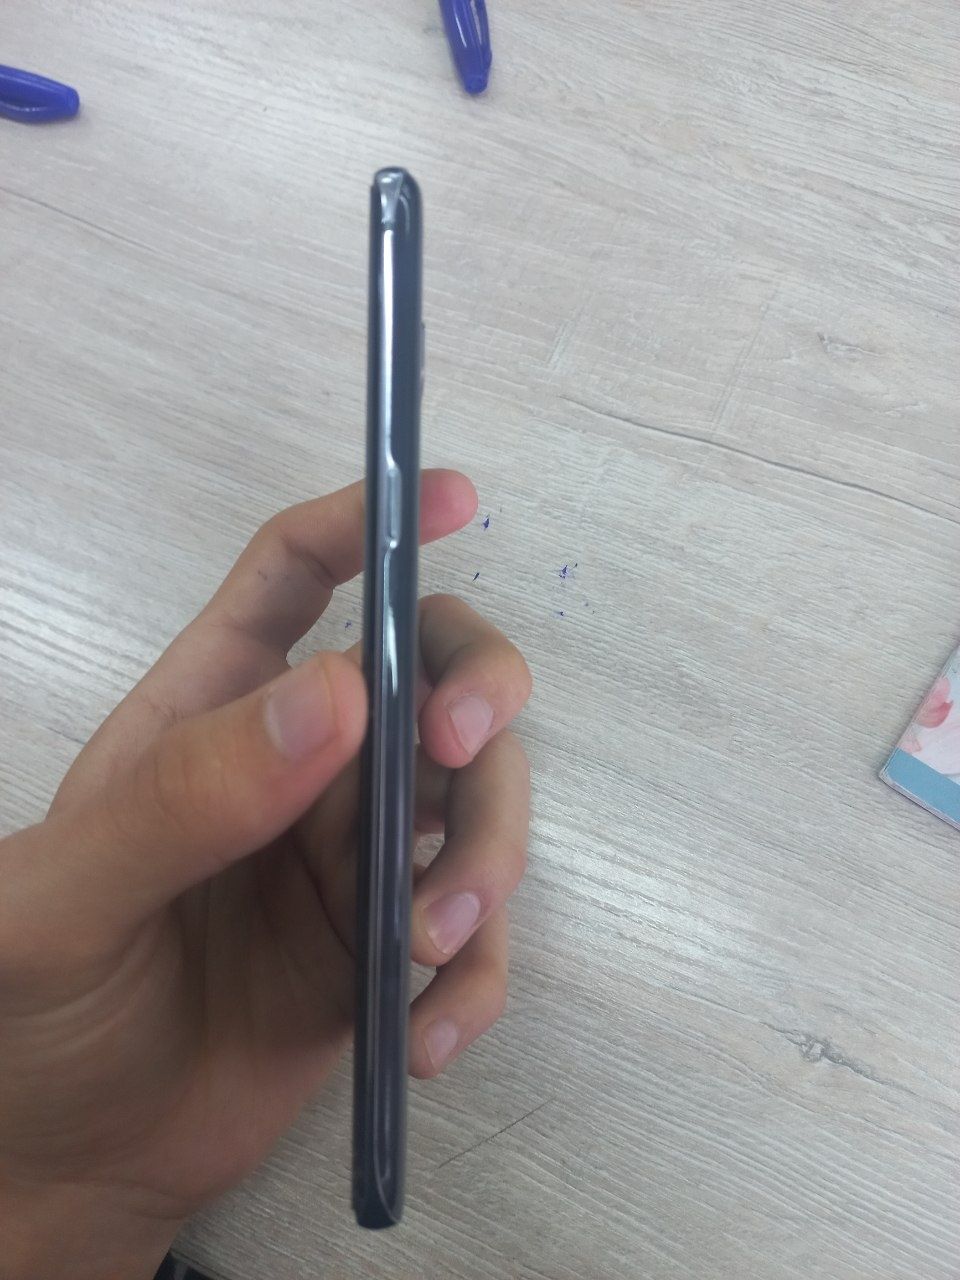 Samsung Galaxy S10 5G 8/256